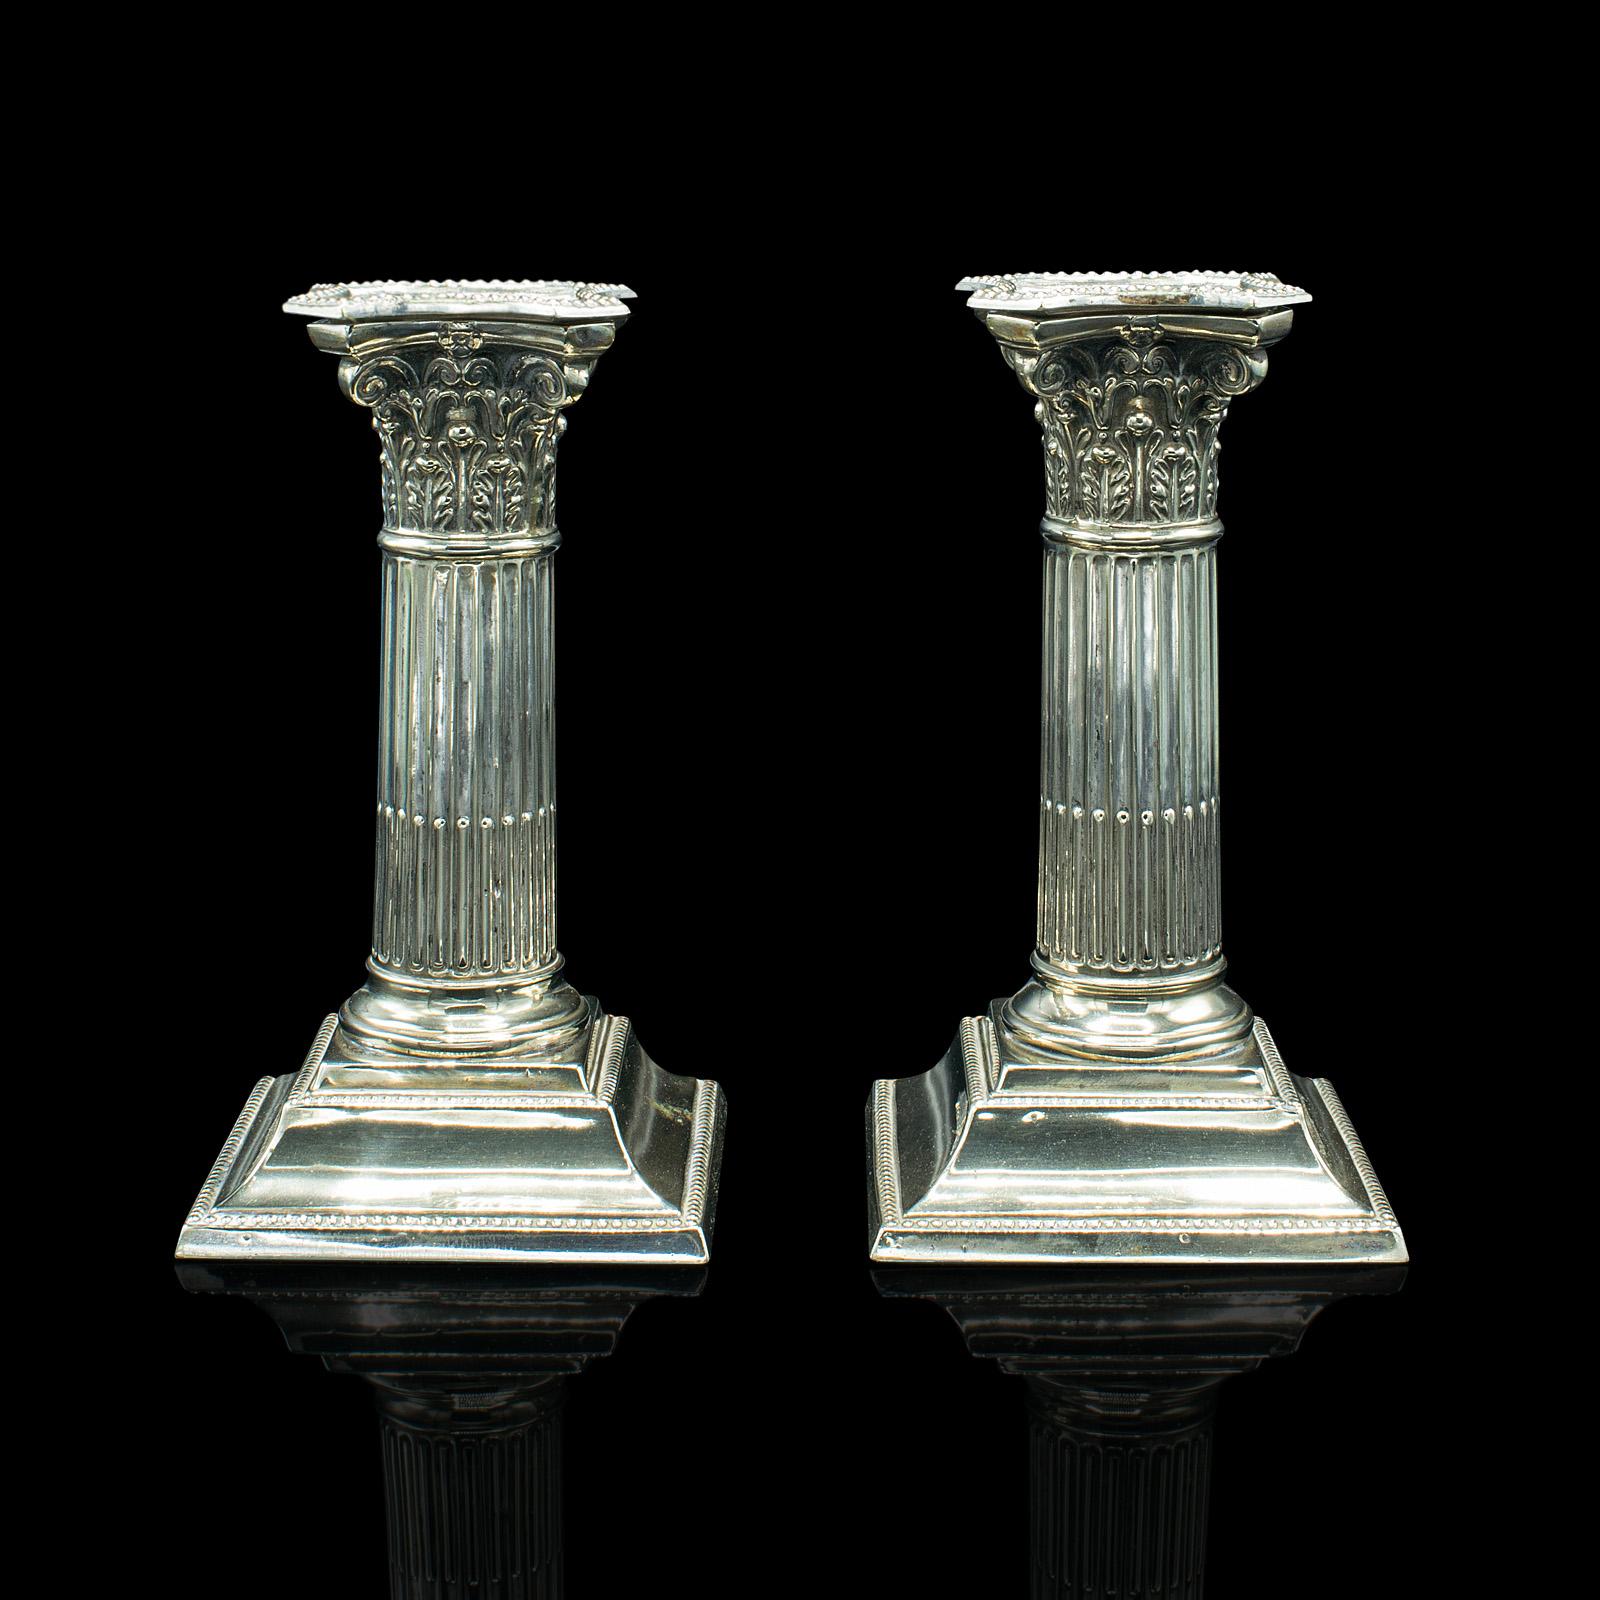 Il s'agit d'une paire de chandeliers décoratifs anciens. Bougeoir Grand Tour italien en métal argenté, datant du milieu de la période victorienne, vers 1860.

Un goût délicieusement classique sous la forme de colonnes corinthiennes
Affiche une